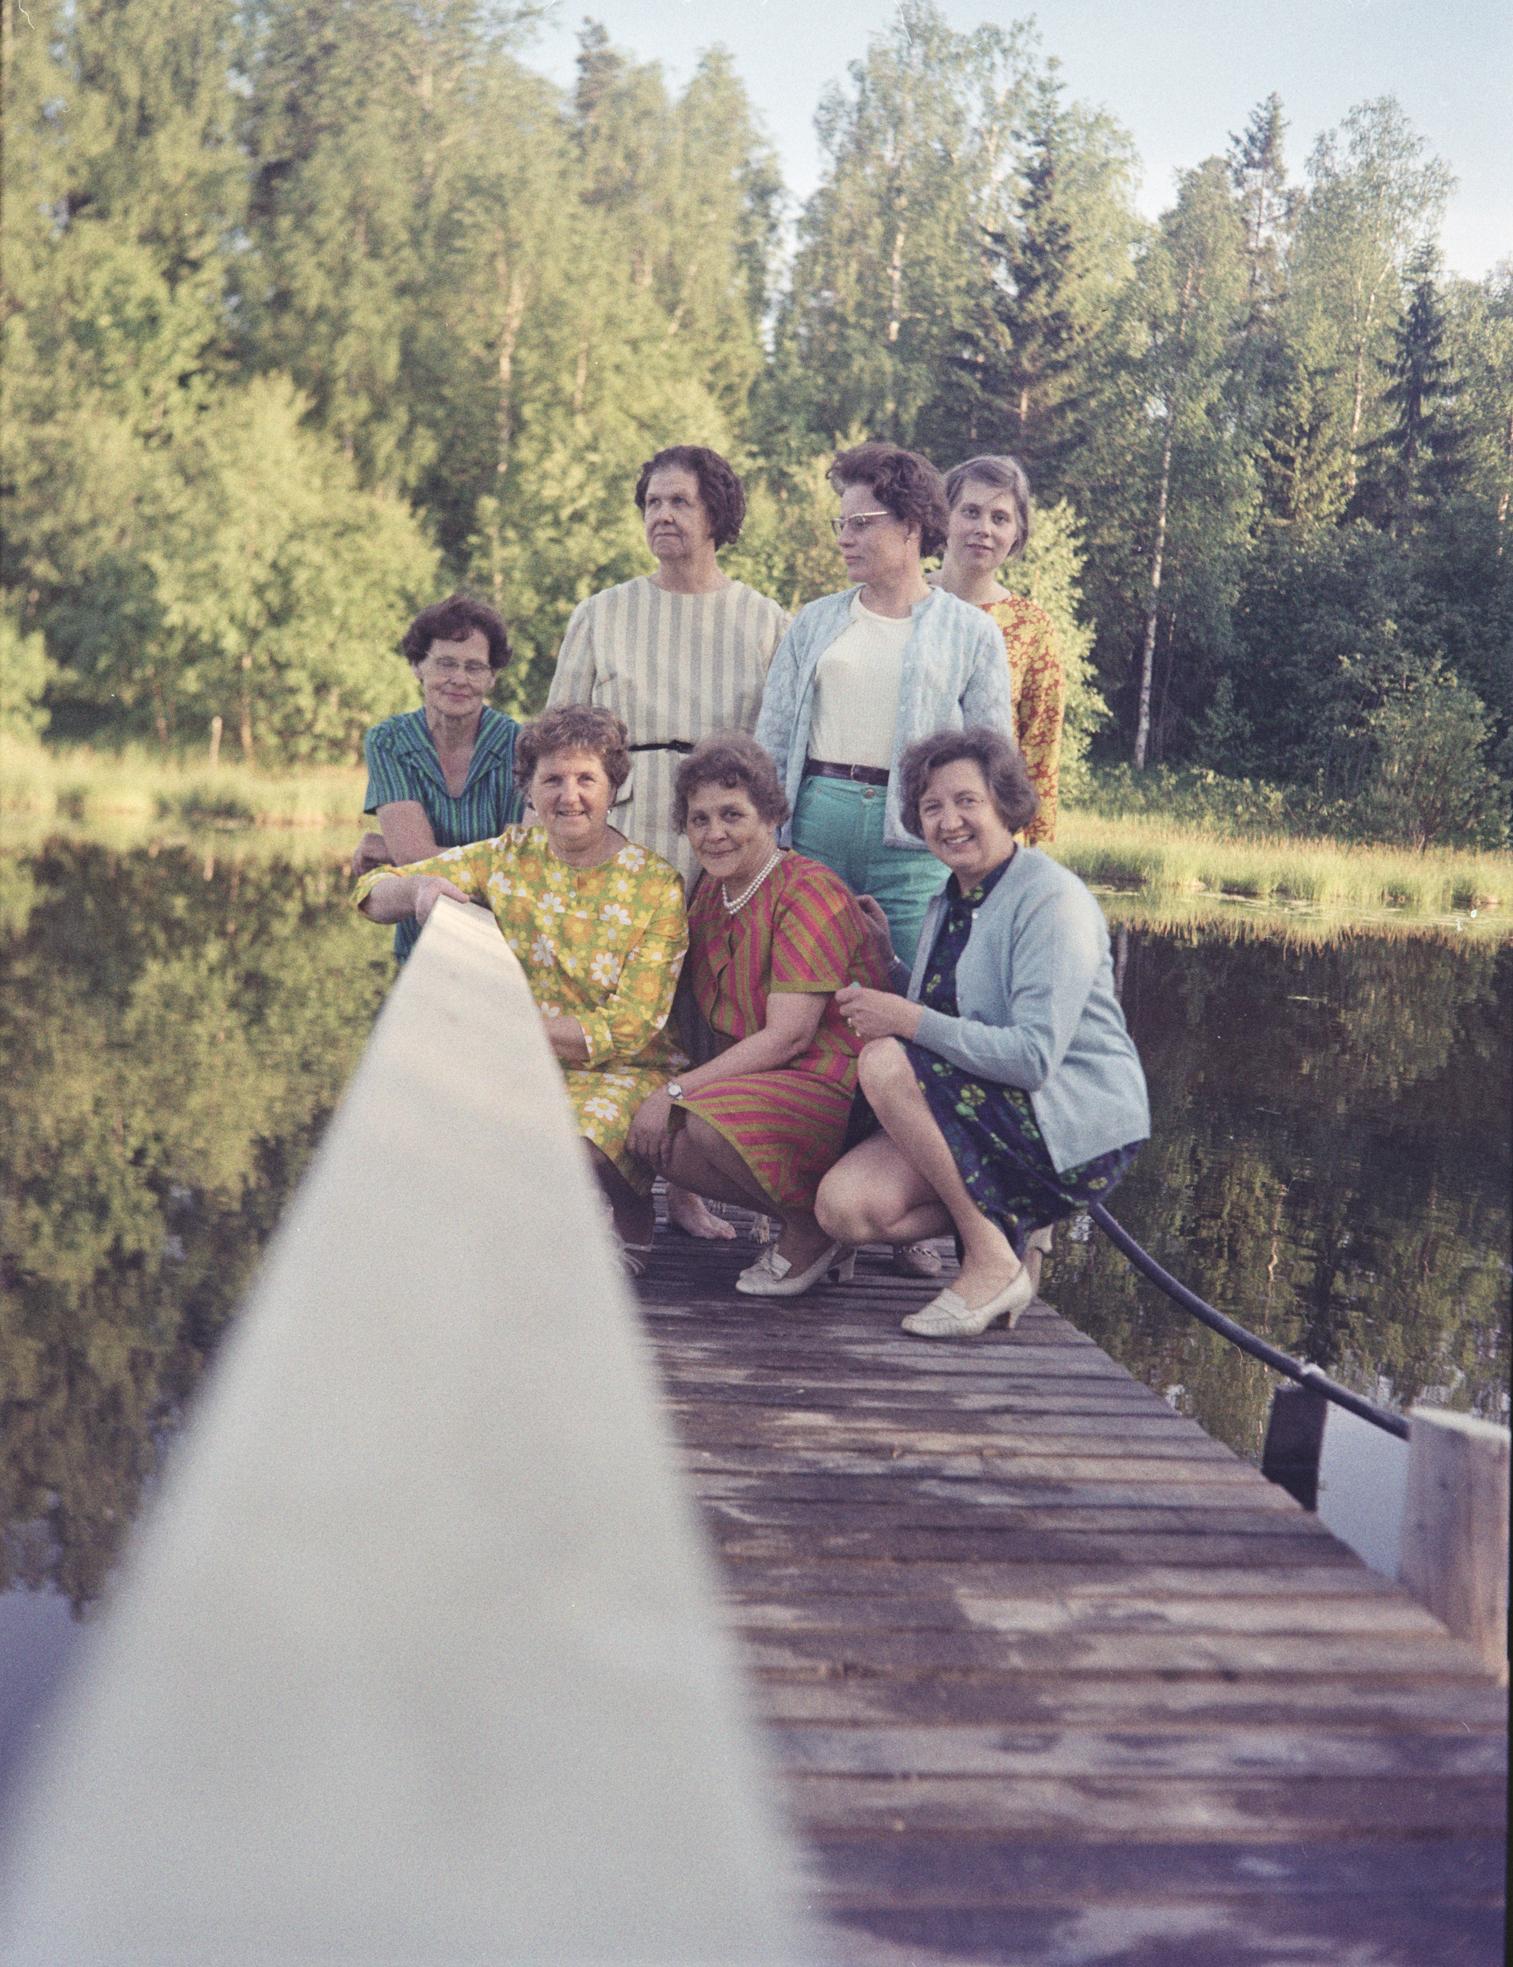 Laiturin päässä on 7 vanhempaa naista. Osa seisoo ja osa on kyykyssä. Laiturin kaide on kuvan keskellä, kuva on luultavasti otettu sitä vasten. Naisten takana näkyy vihreää metsää.